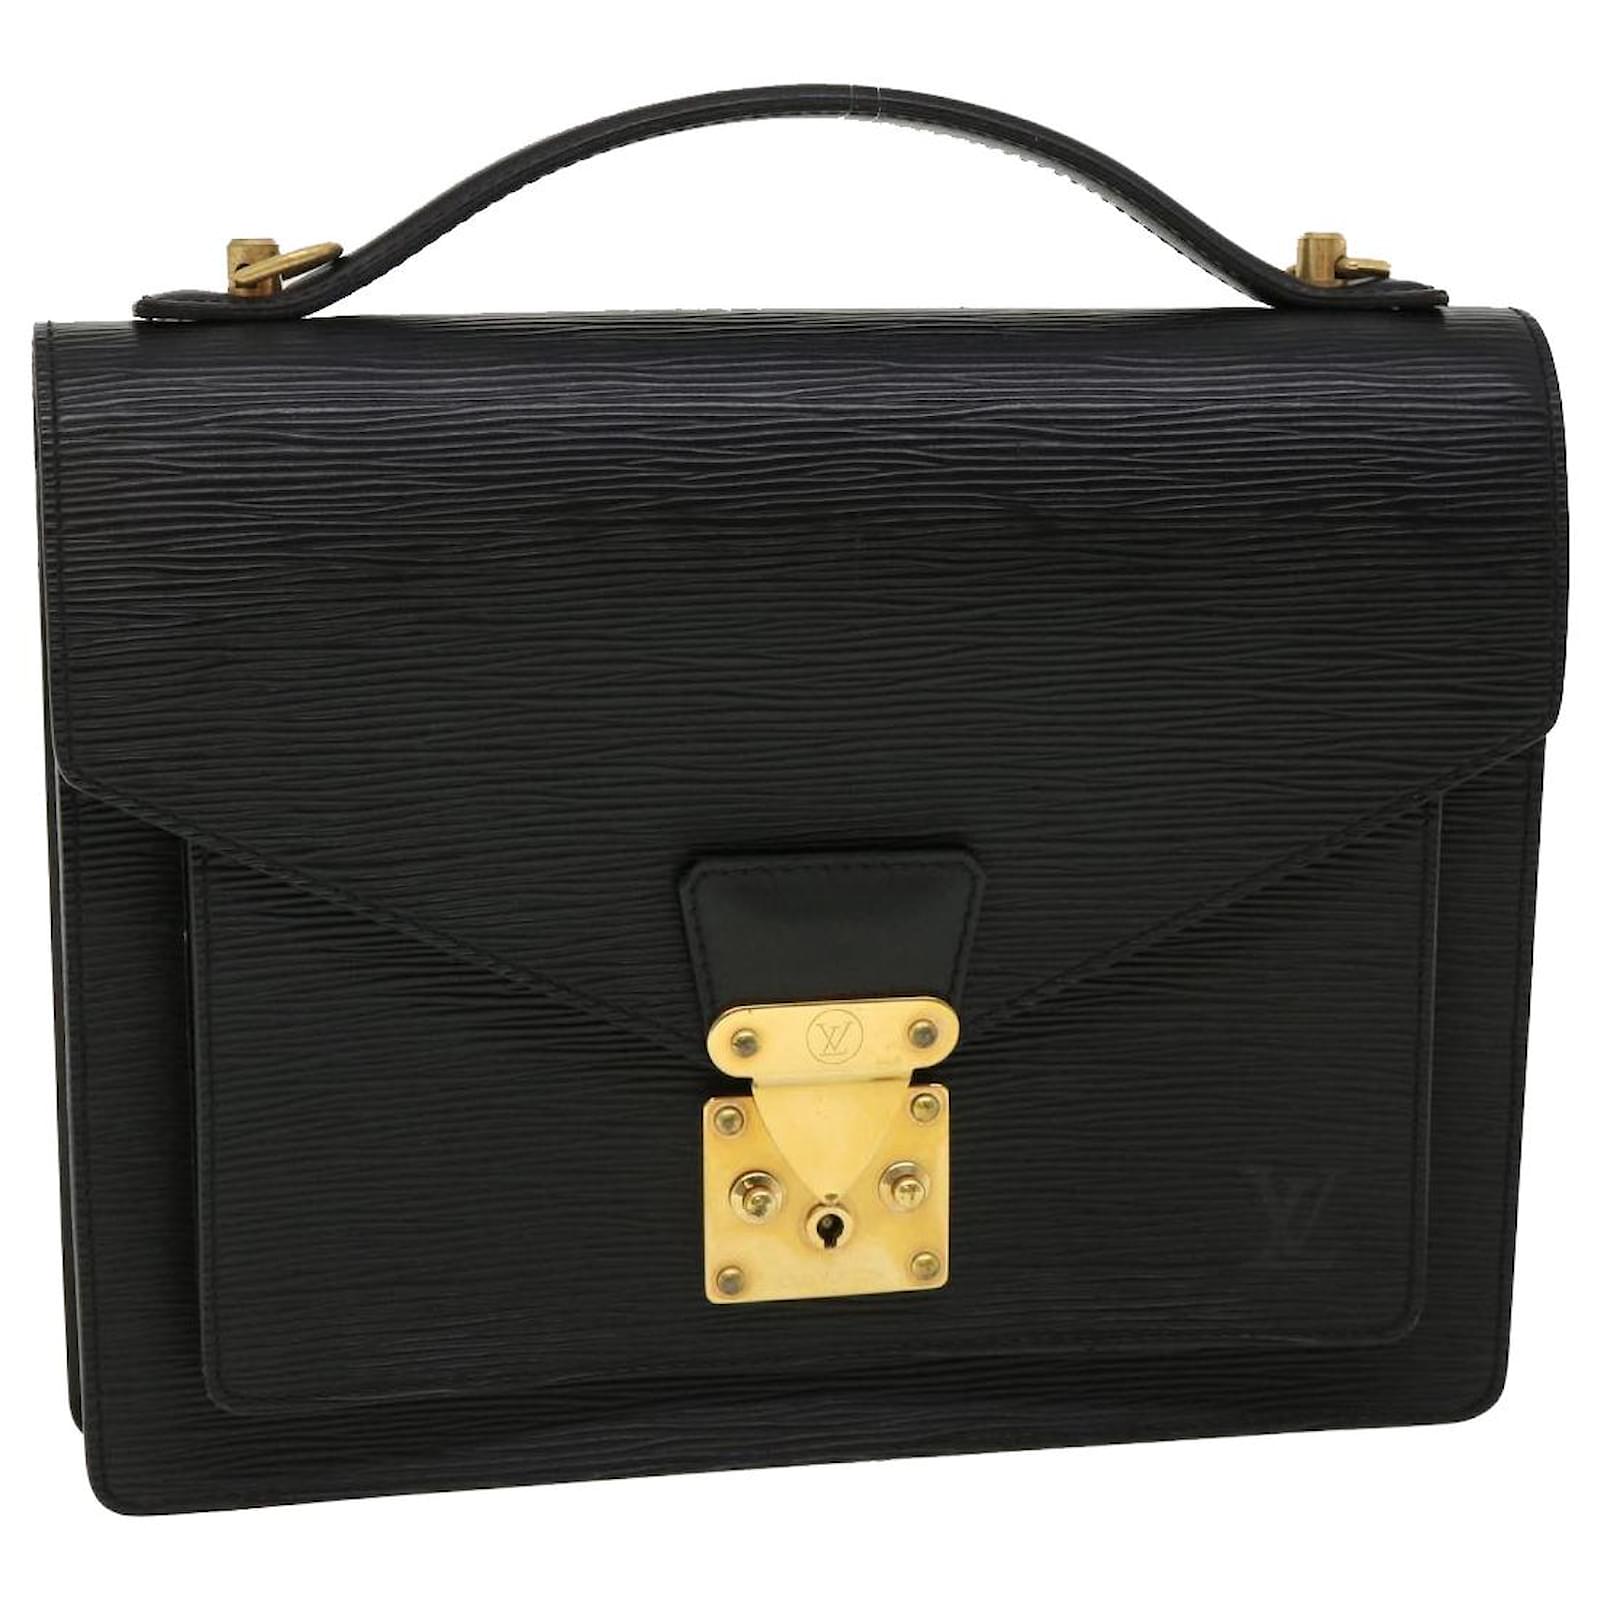  LOUIS VUITTON M52127 Monceau Epi Handbag Epi Leather